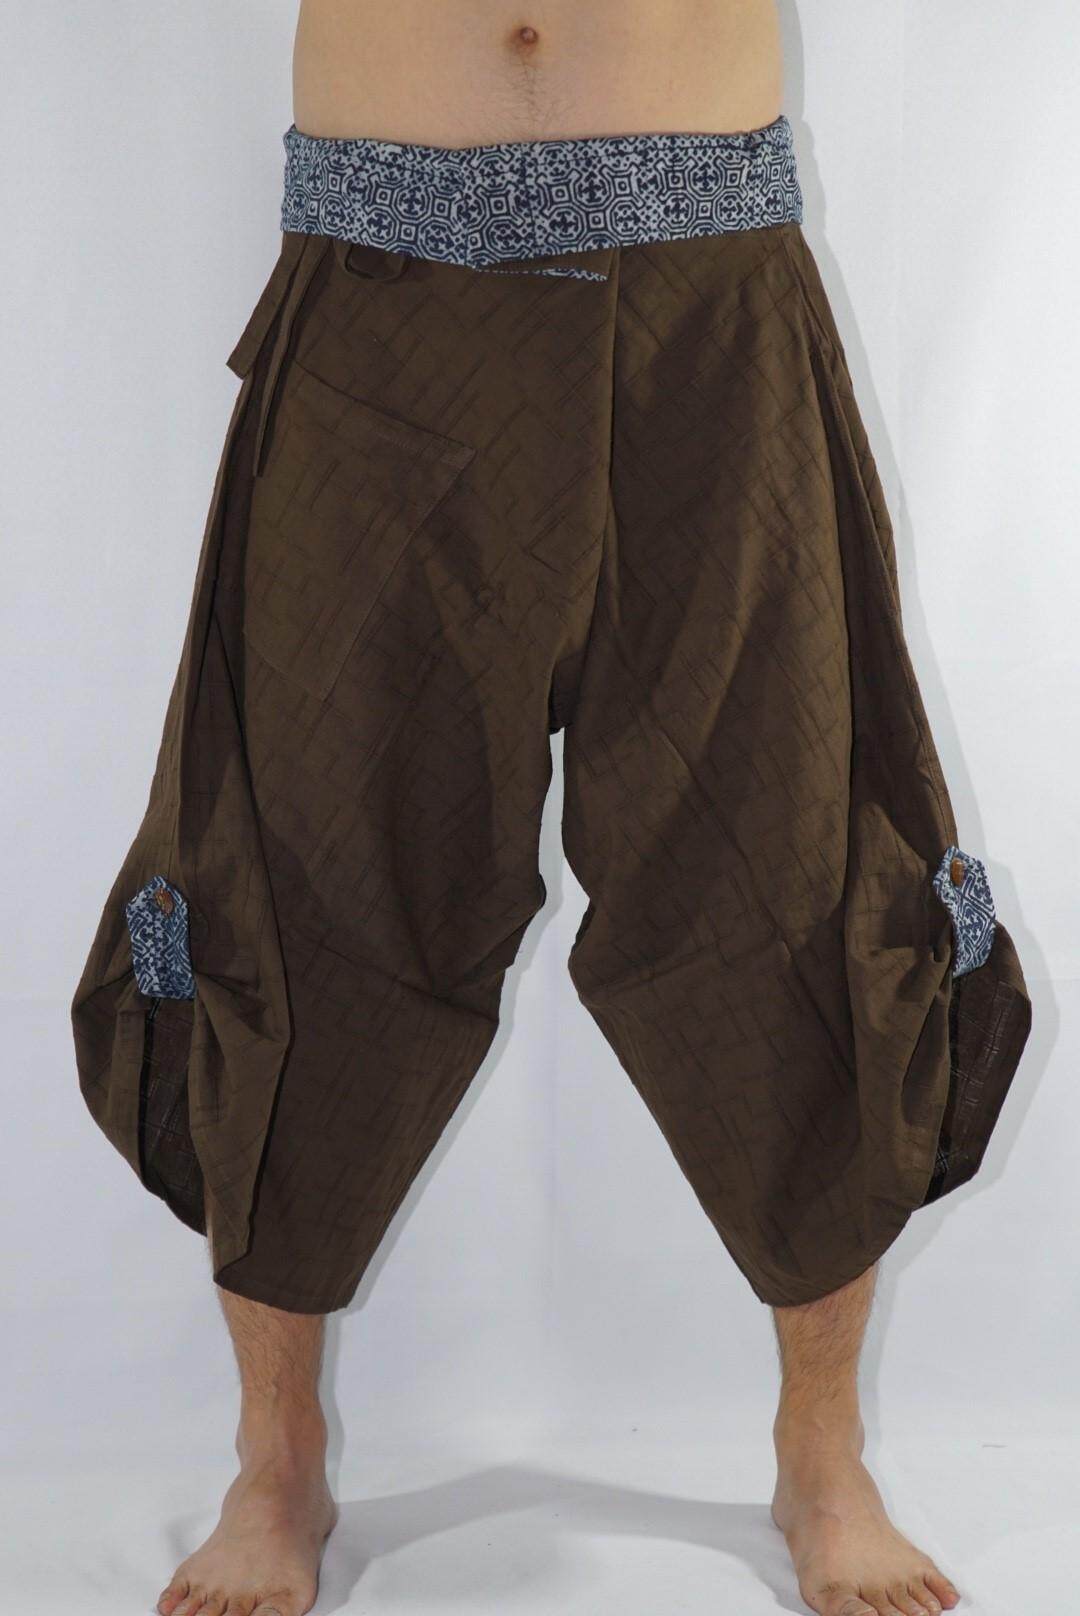 ซามูไร เอวผูก (Samurai pants)